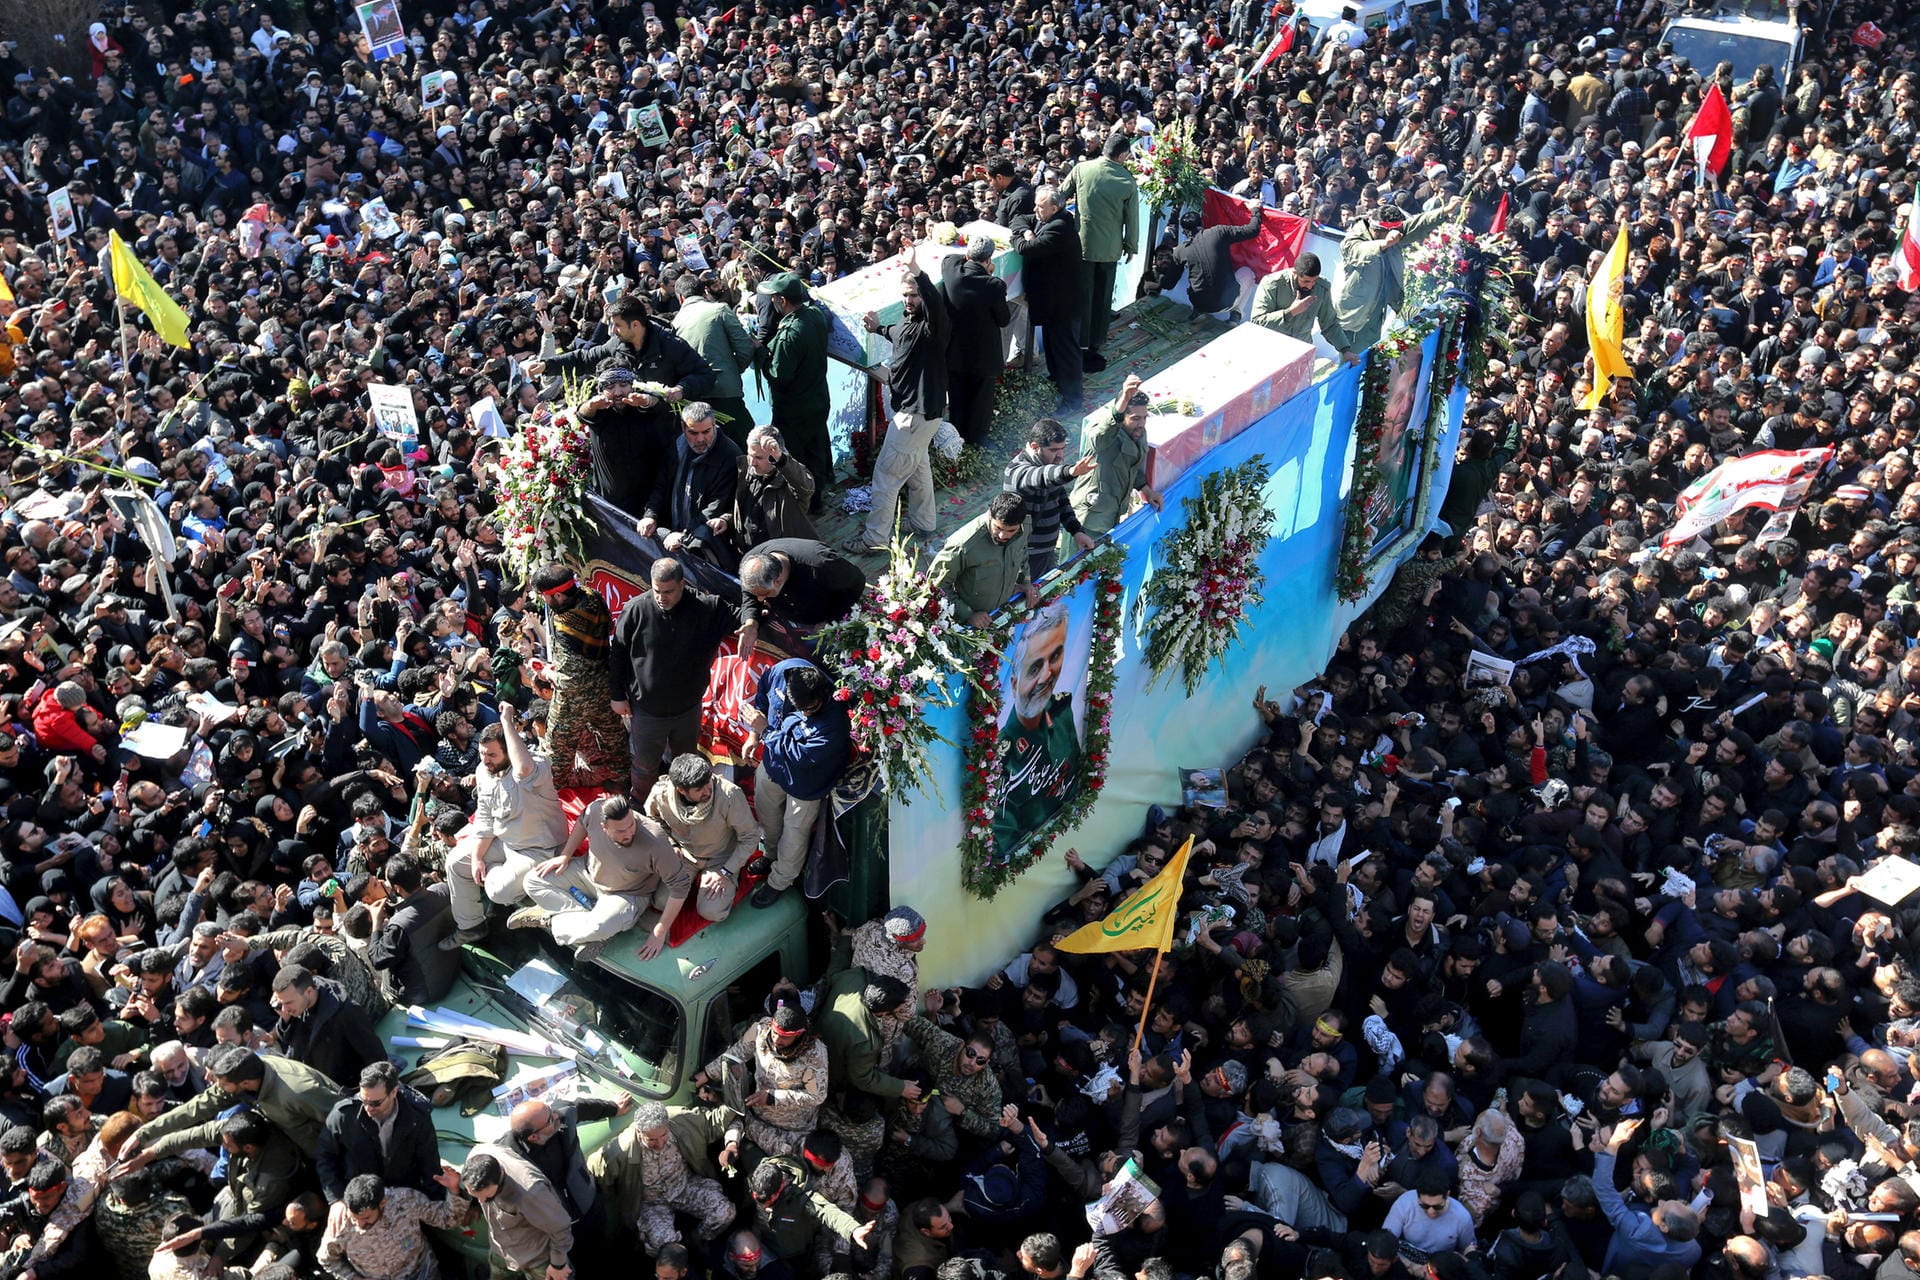 Die Särge des iranischen Generals und weiterer seiner Kameraden wurden auf einem Lkw durch die Menschenmassen transportiert.